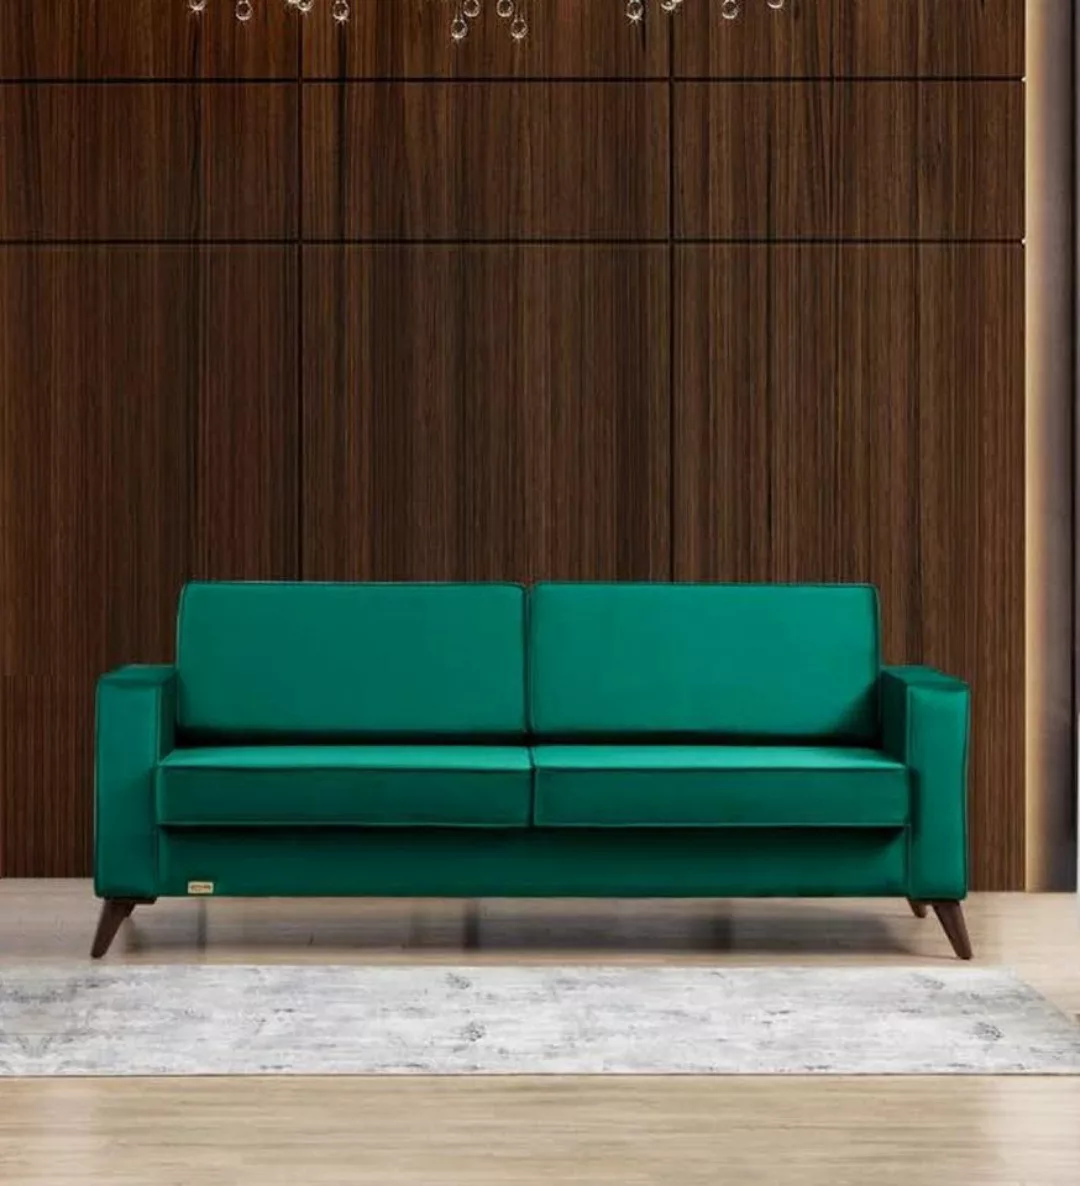 JVmoebel Sofa Textil 3 Sitzer Grüne Couch Modern Sofa Polsterung Neu, Made günstig online kaufen